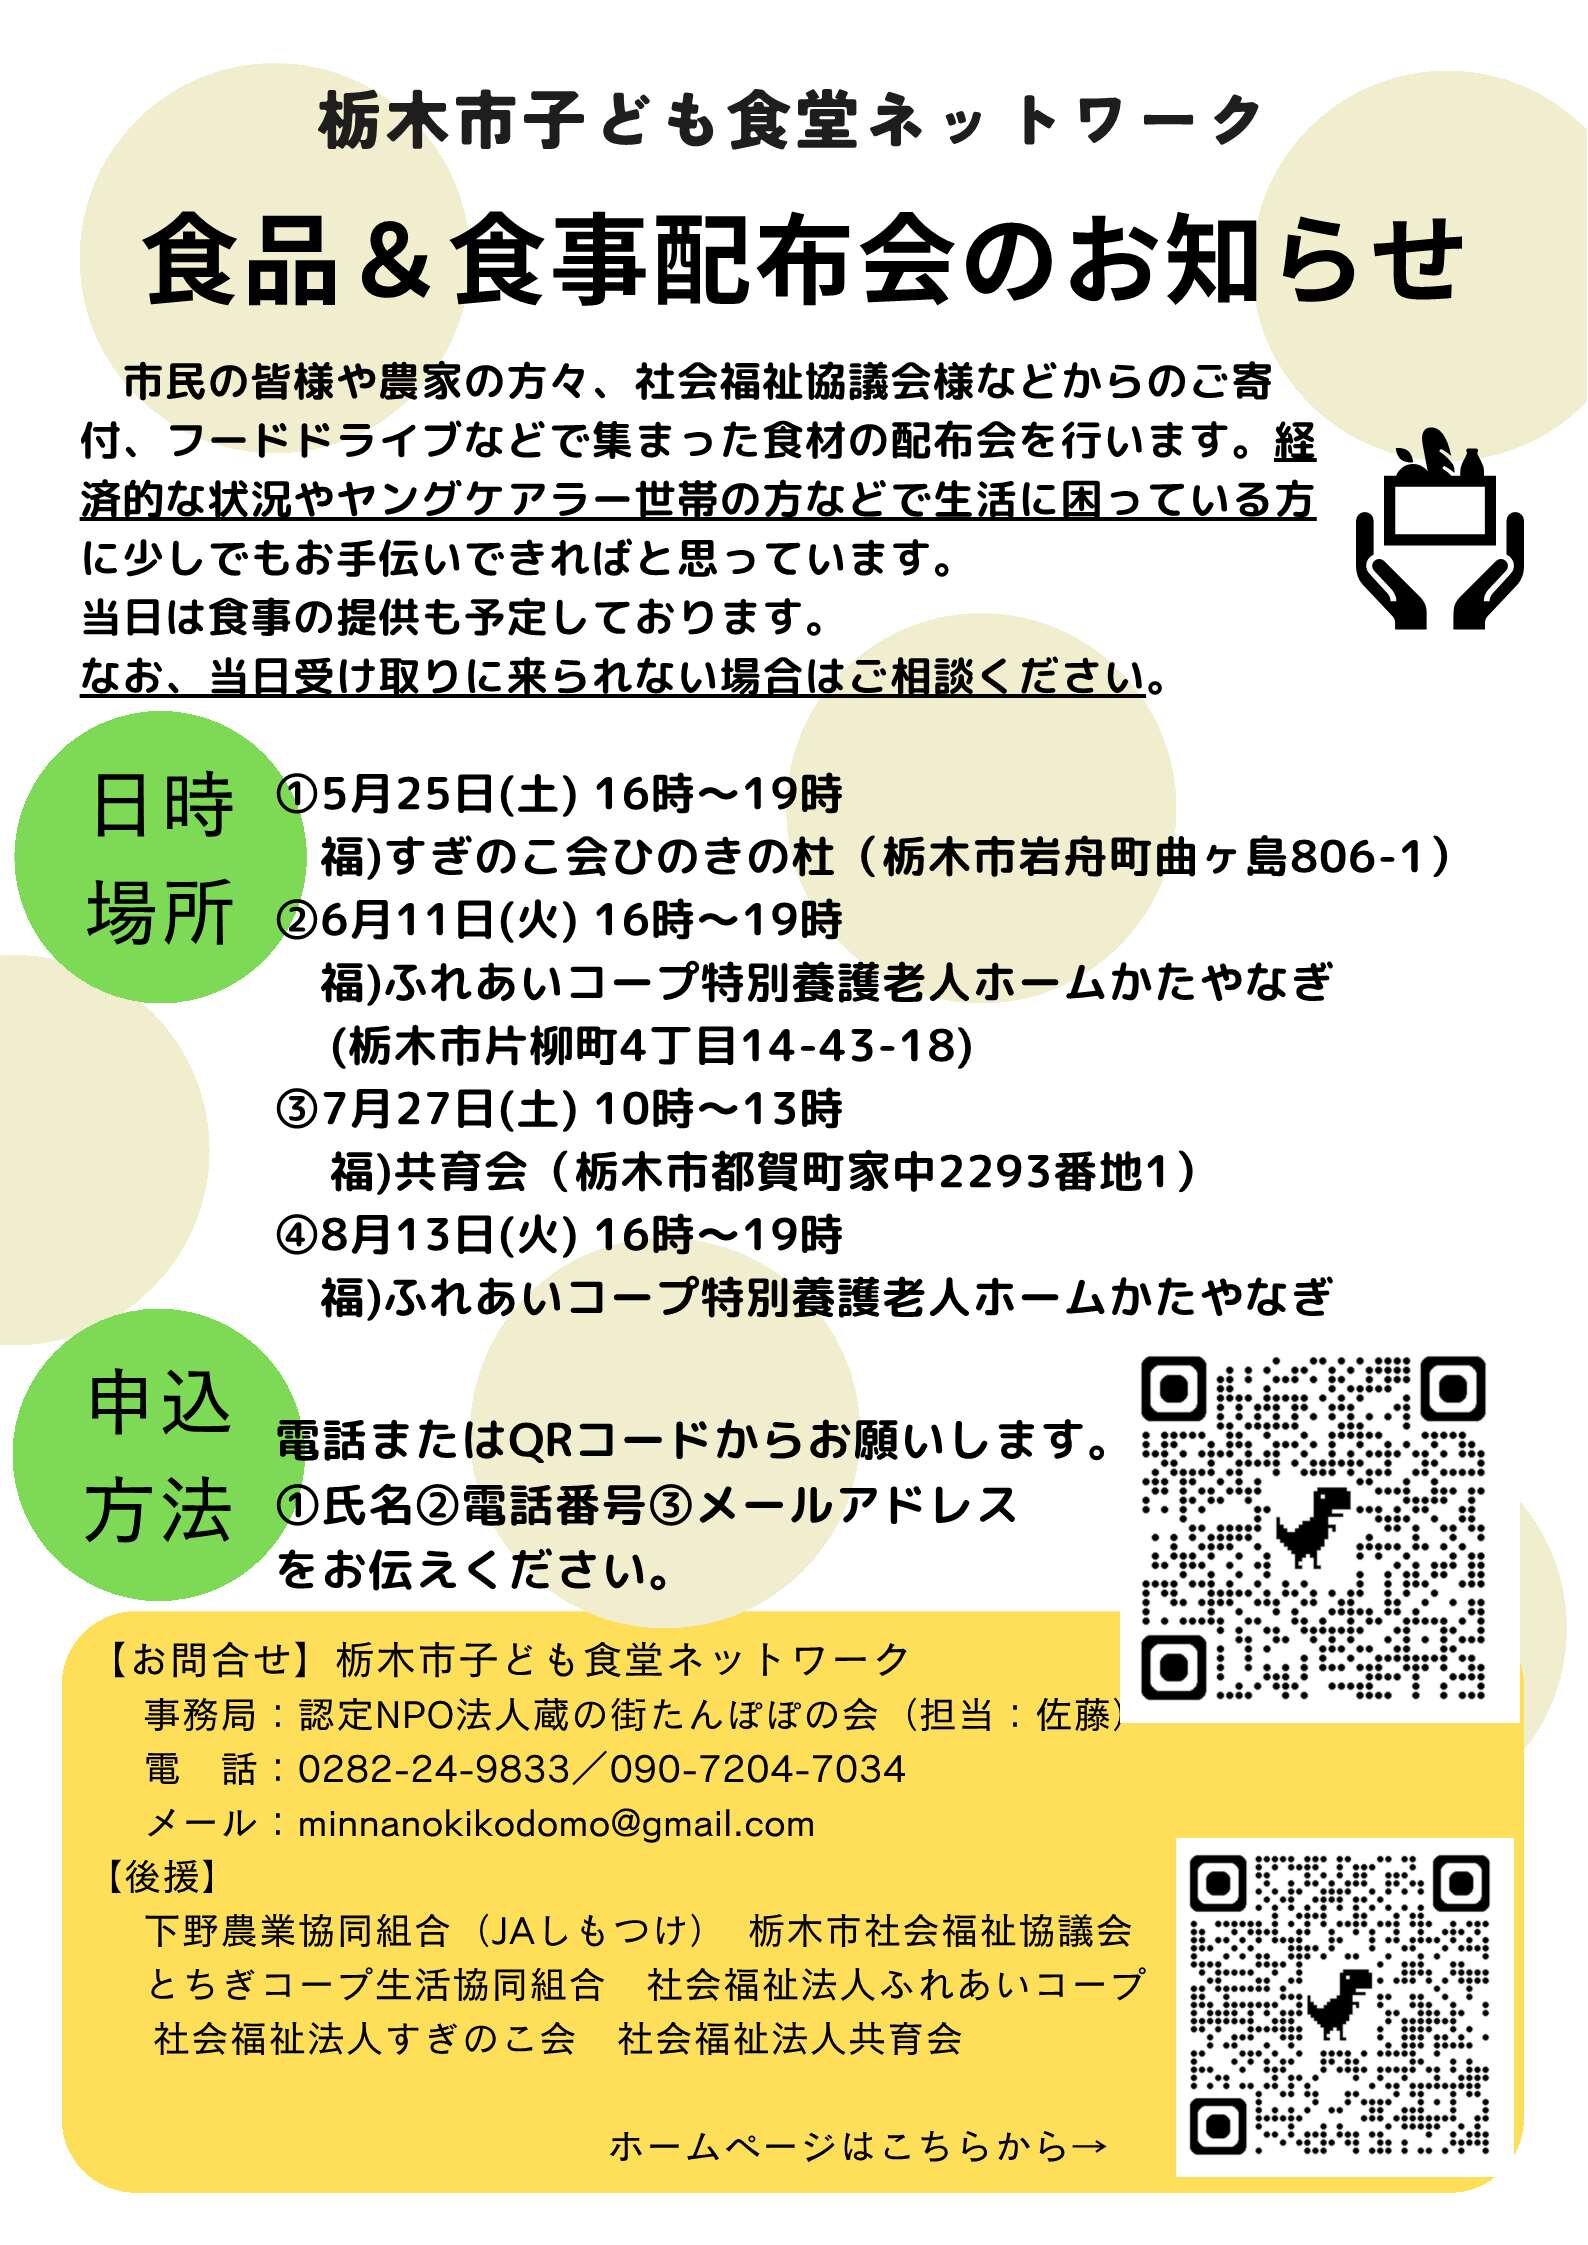 栃木市子ども食堂ネットワークより「食品＆食事配布会」のお知らせ(7/27)